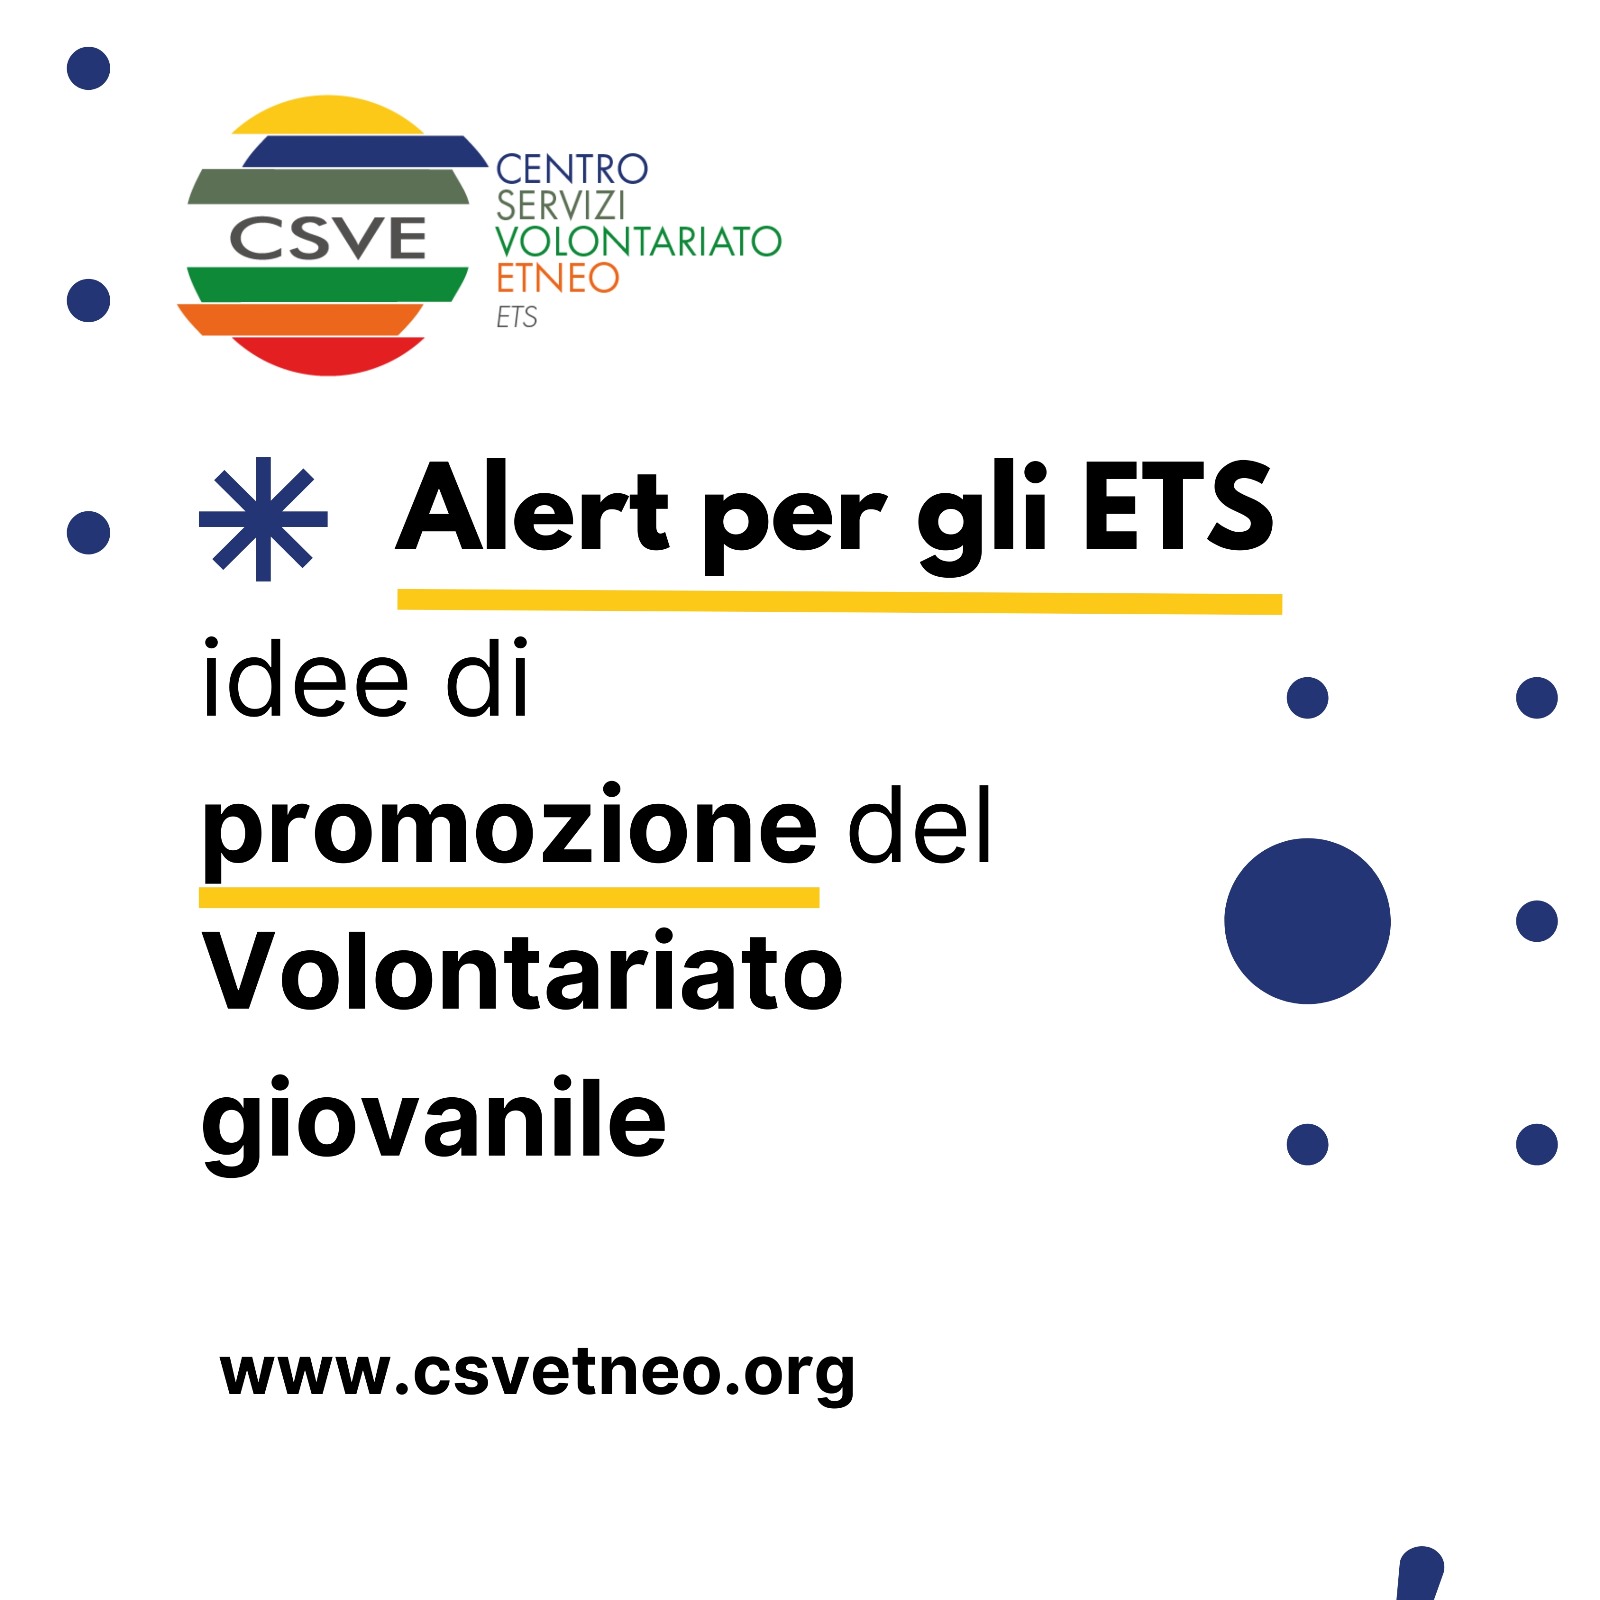 Alert per gli ETS: Promozione del volontariato giovanile